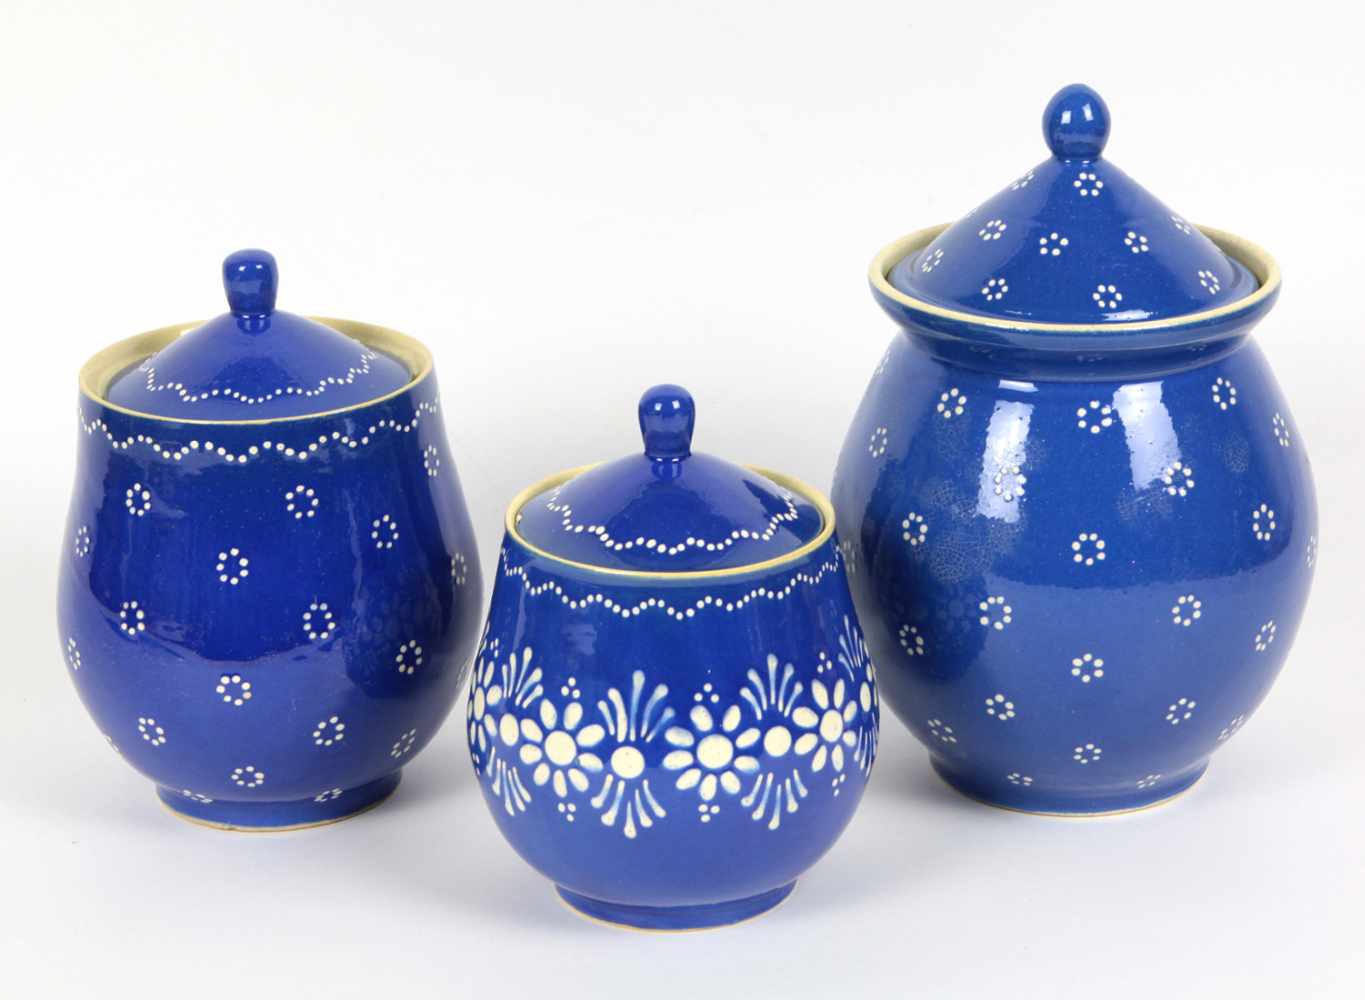 3 Deckelgefäße Bürgel Keramik mit klaasichem weißem Punkt- u. Floraldekor auf blau glasiertem Grund,